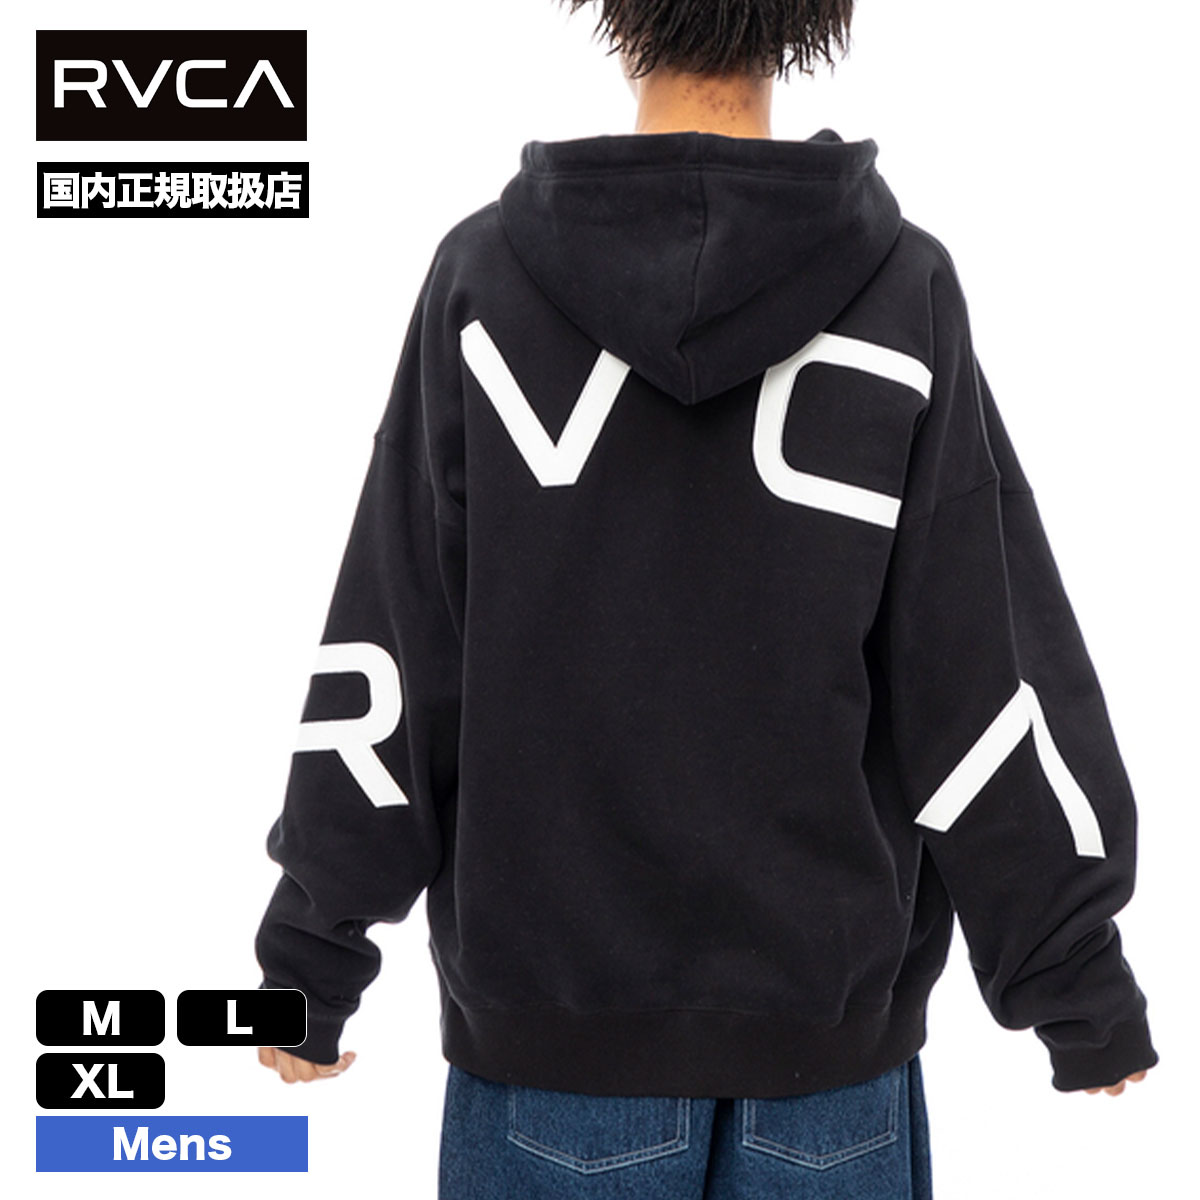 RVCA スウェット パーカー メンズ フルジップ ジャケット 羽織り 全3色 M L XL 人気ブ...